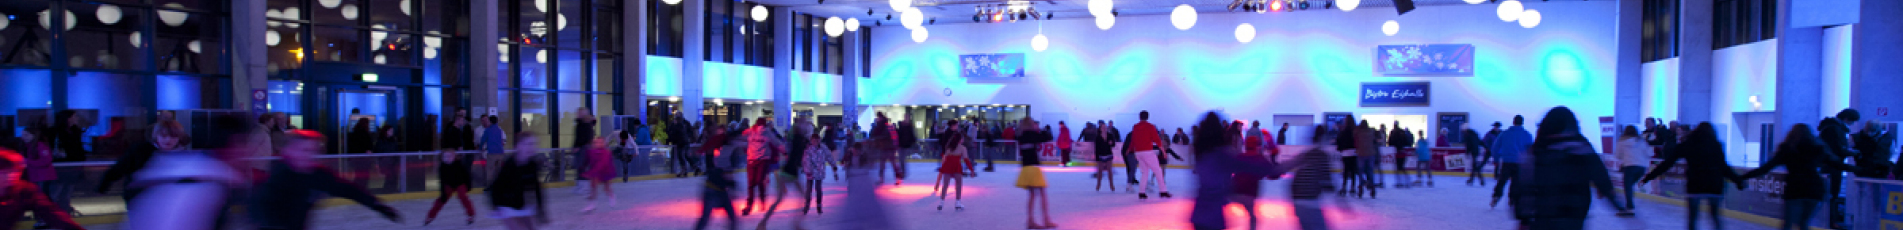 Die Eishalle ist in lilanes Licht getaucht und viele Jugendliche geben auf der Eisfläche Gas.